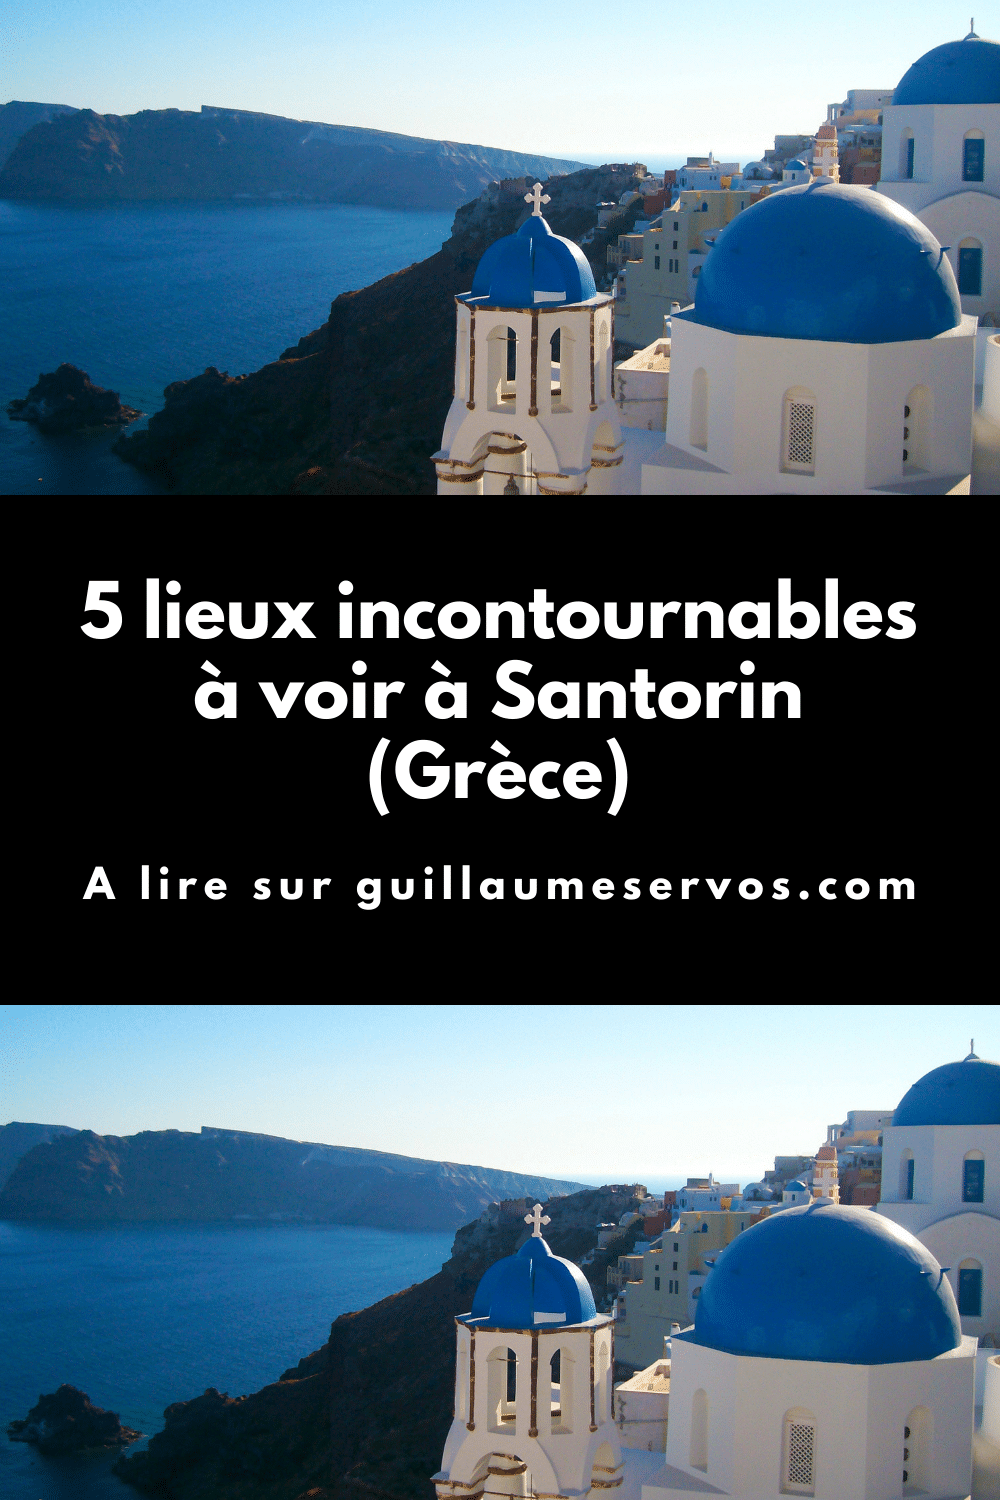 Découvre la sublime île de Santorin ou Santorini dans les Cyclades. Fira, Pyrgos, Red Beach, Nea Kameni, Oia...